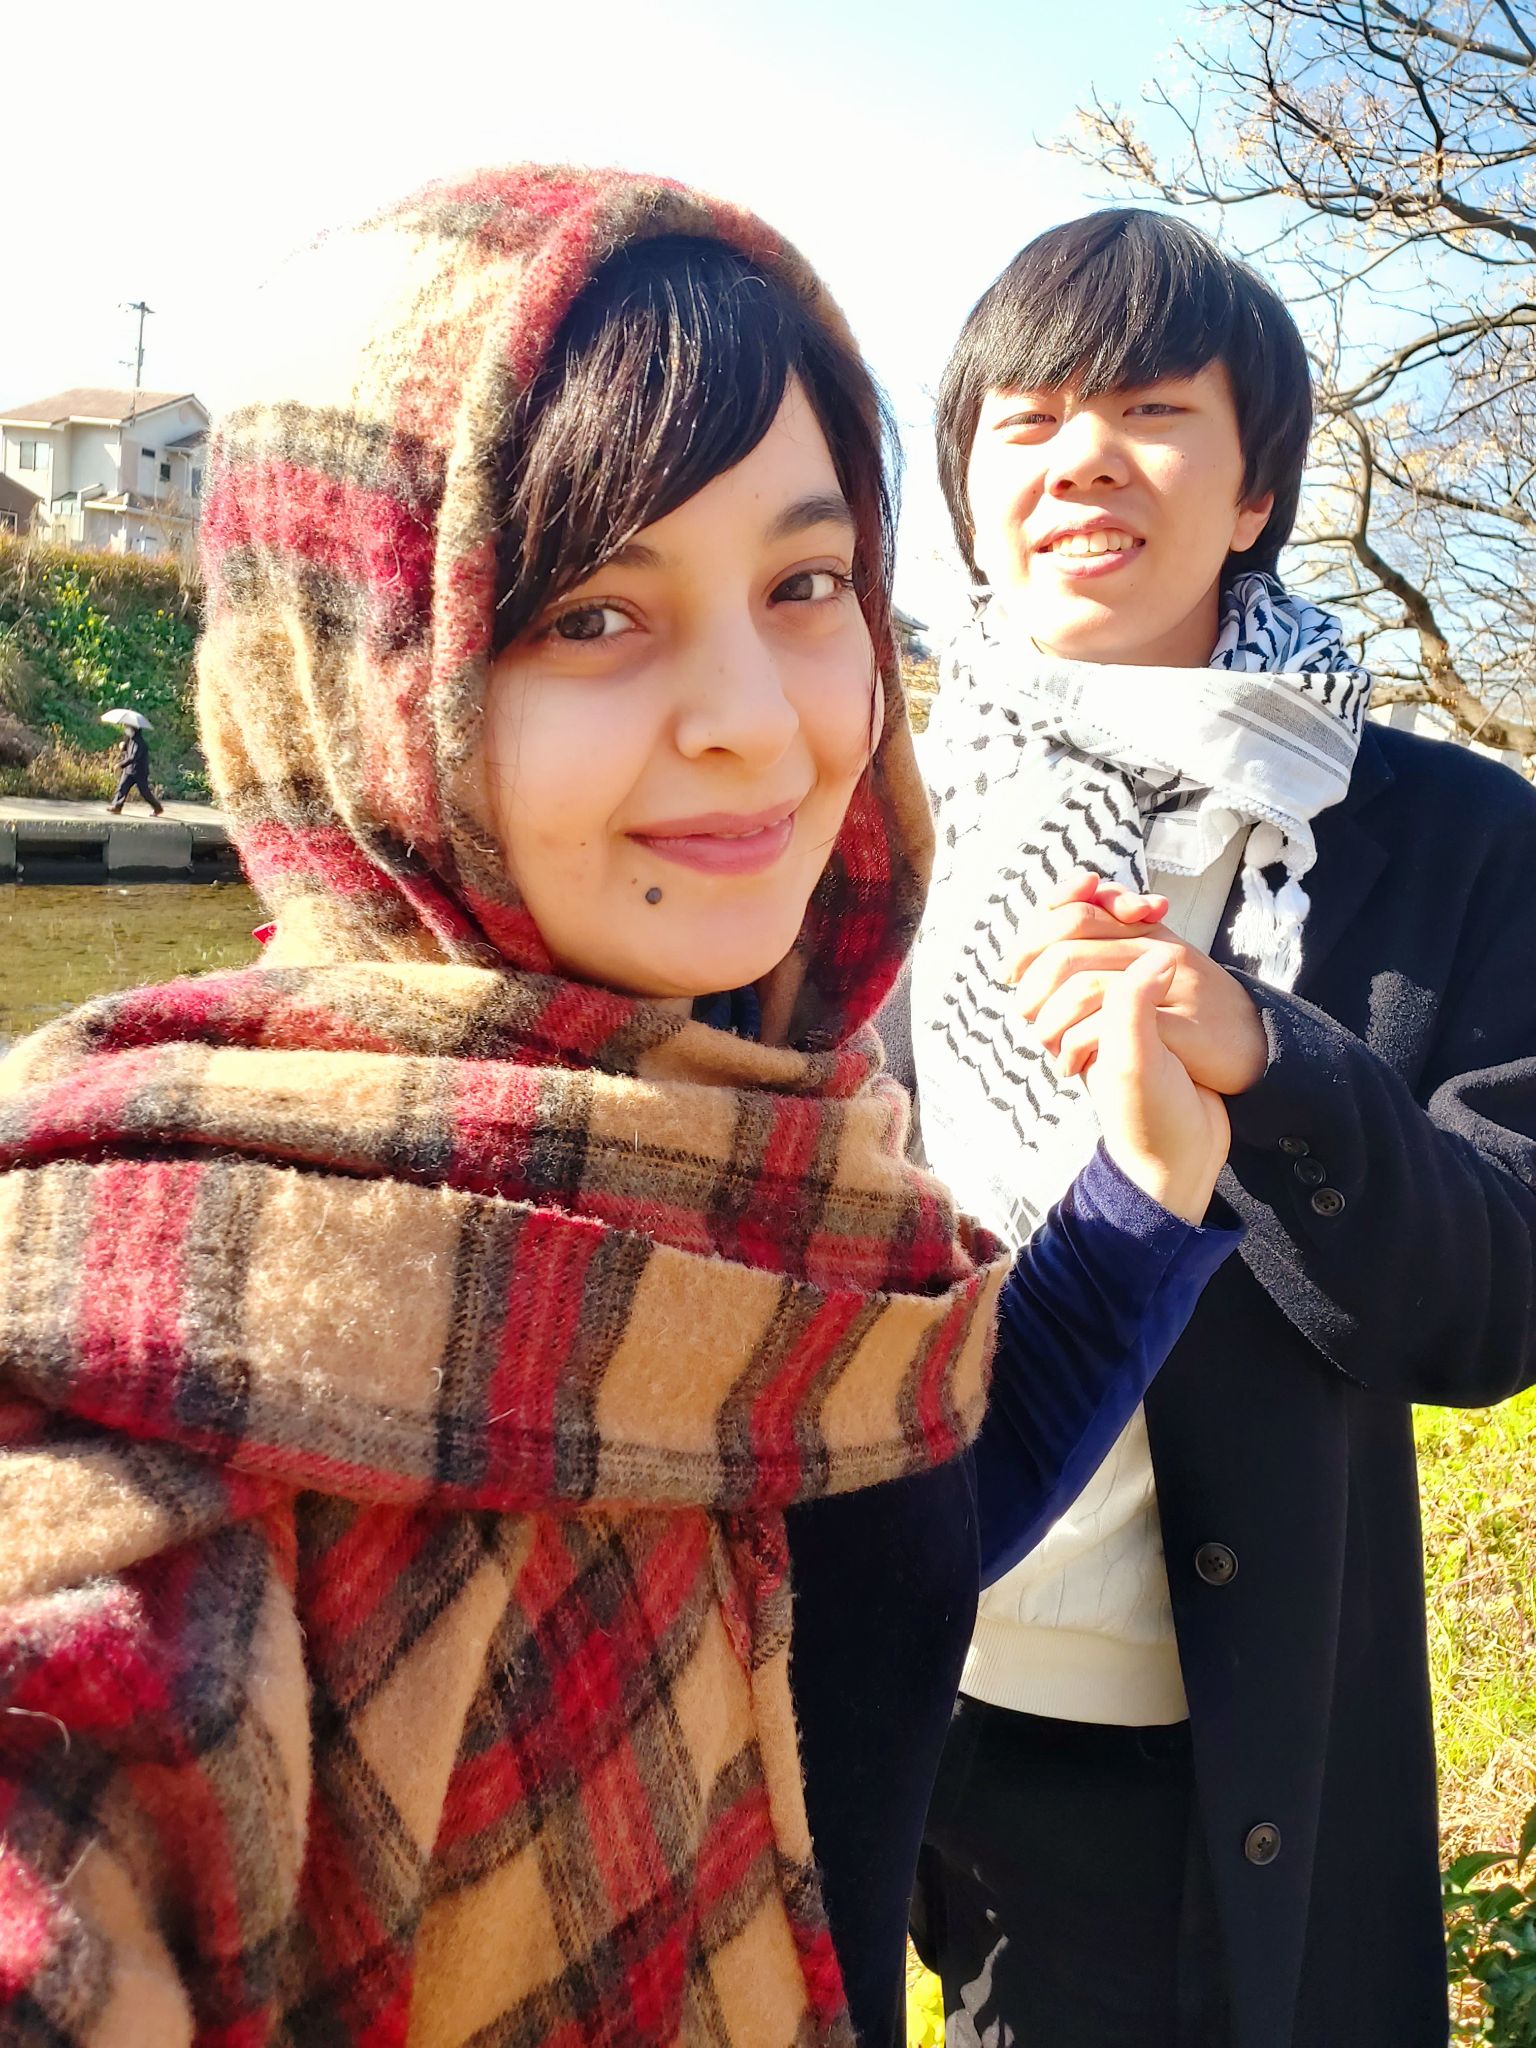 Omneya Al Adeeli is enjoying exploring Japan with her husband Shotaro One (Credit: Omneya Al Adeeli)